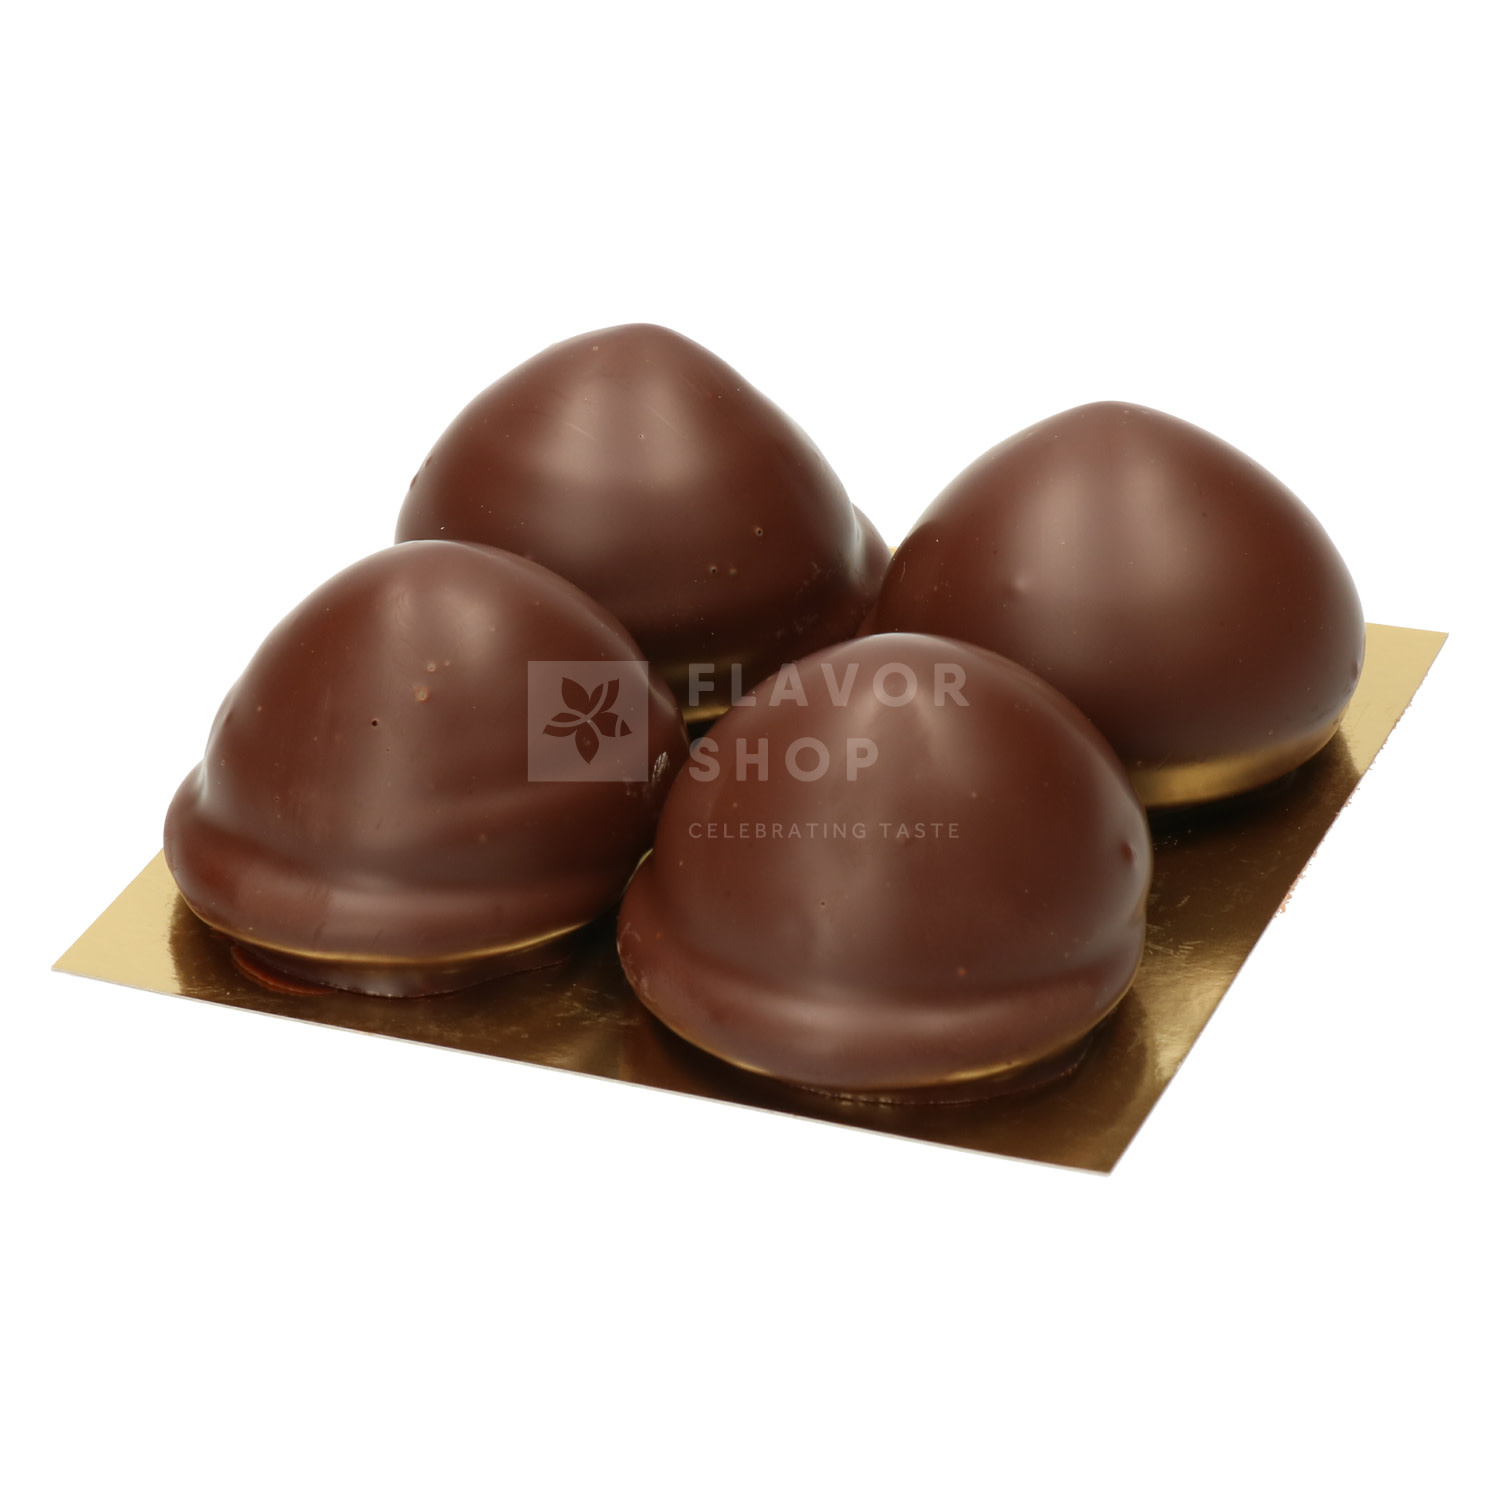 Baisers au chocolat noir - 4 pièces - Flavor Shop - Celebrating Taste